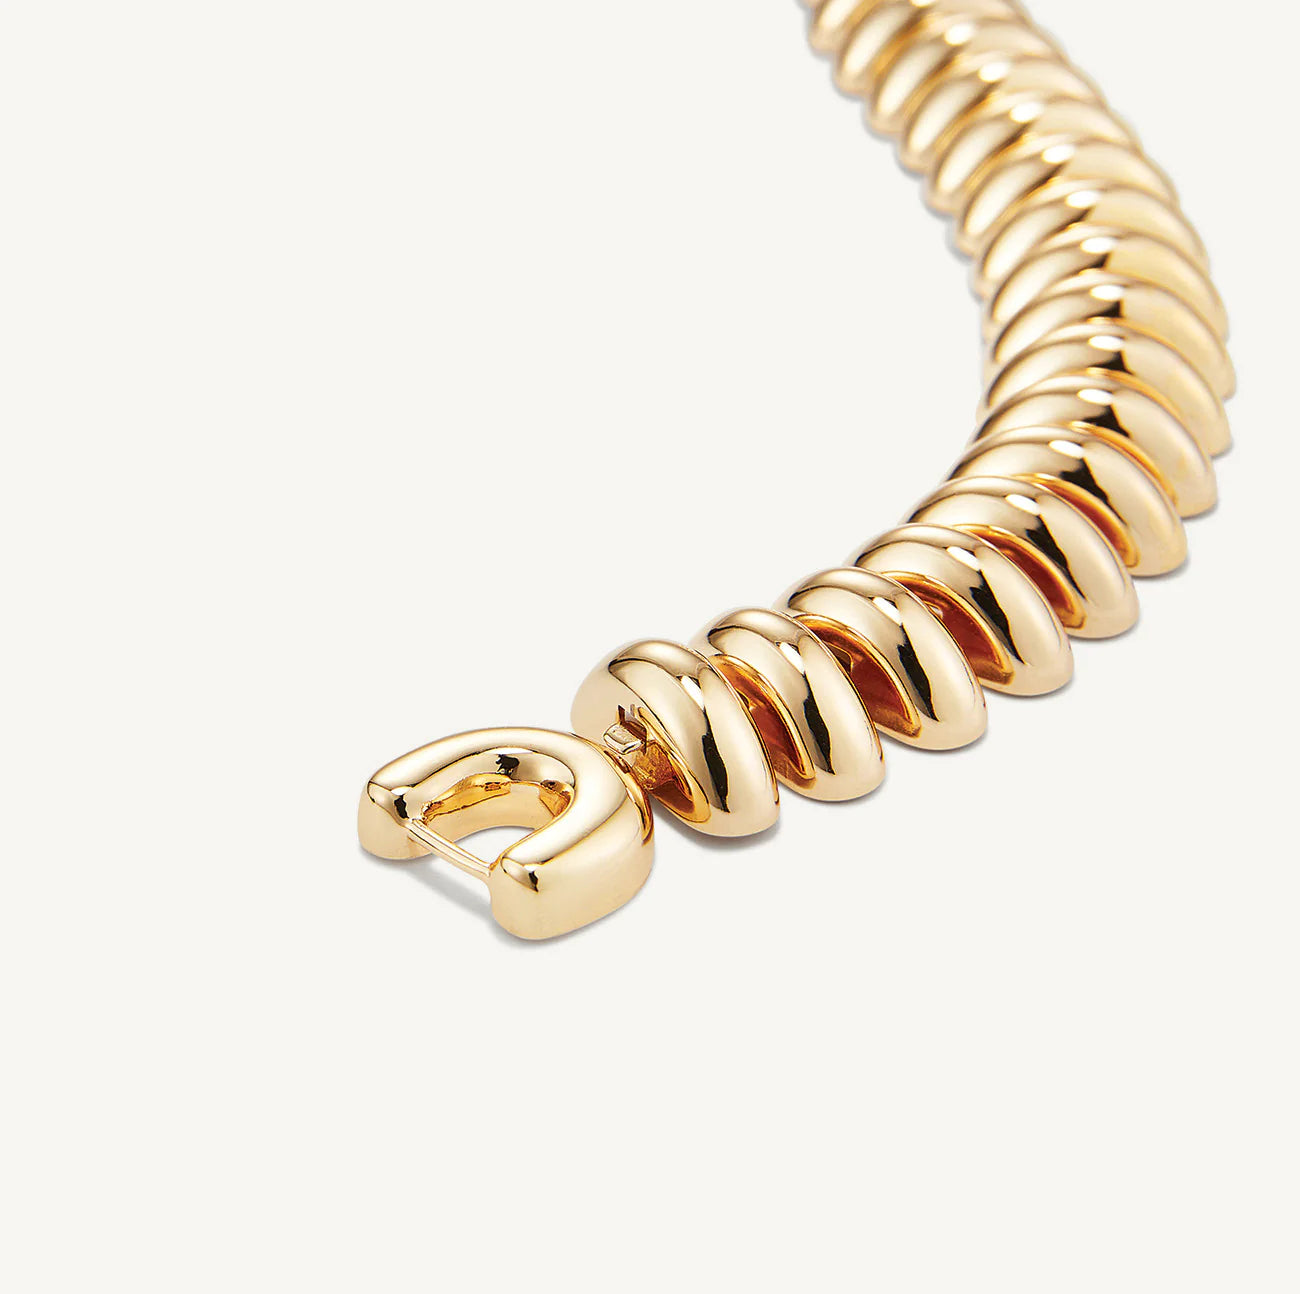 Sofia Mega Bracelet - Gold by Jenny Bird